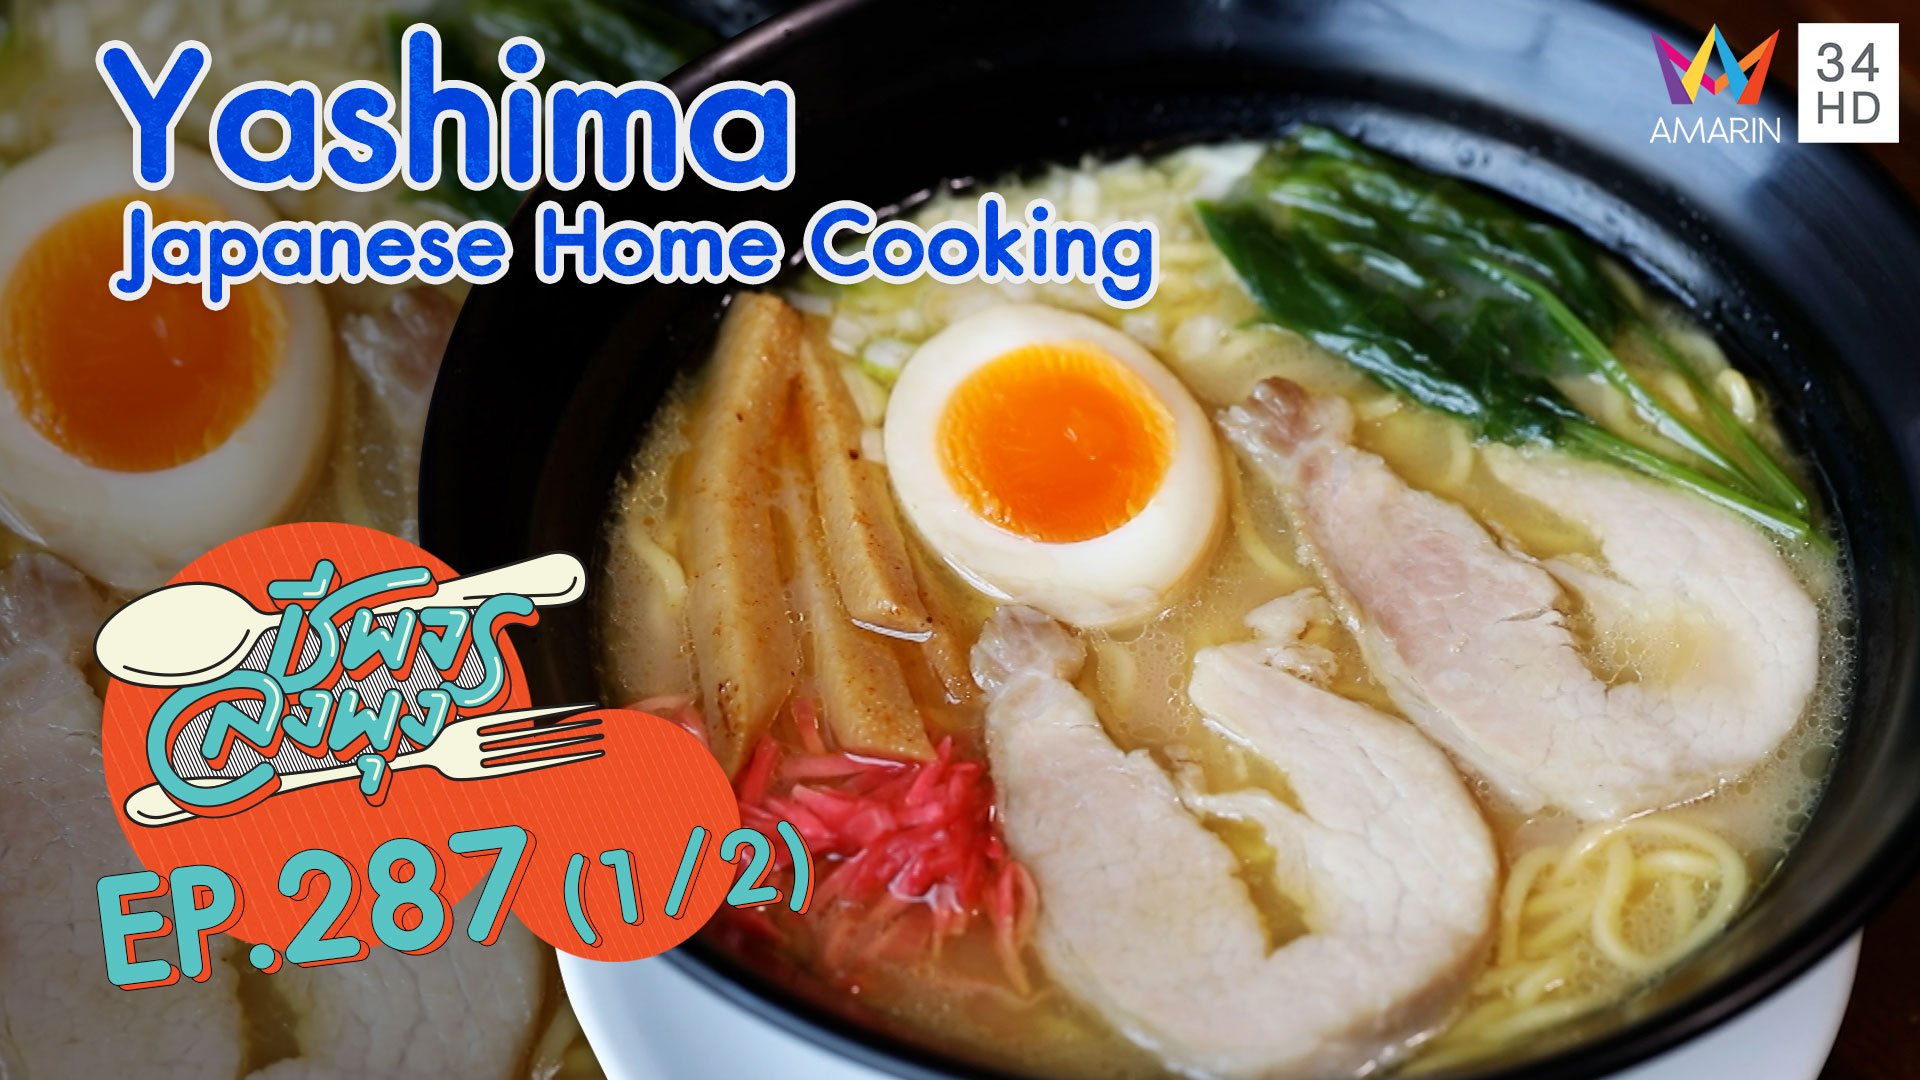 อาหารญี่ปุ่นอร่อยสุดฟิน @ ร้าน Yashima Japanese Home Cooking | ชีพจรลงพุง | 21 มี.ค. 64 (1/2) | AMARIN TVHD34